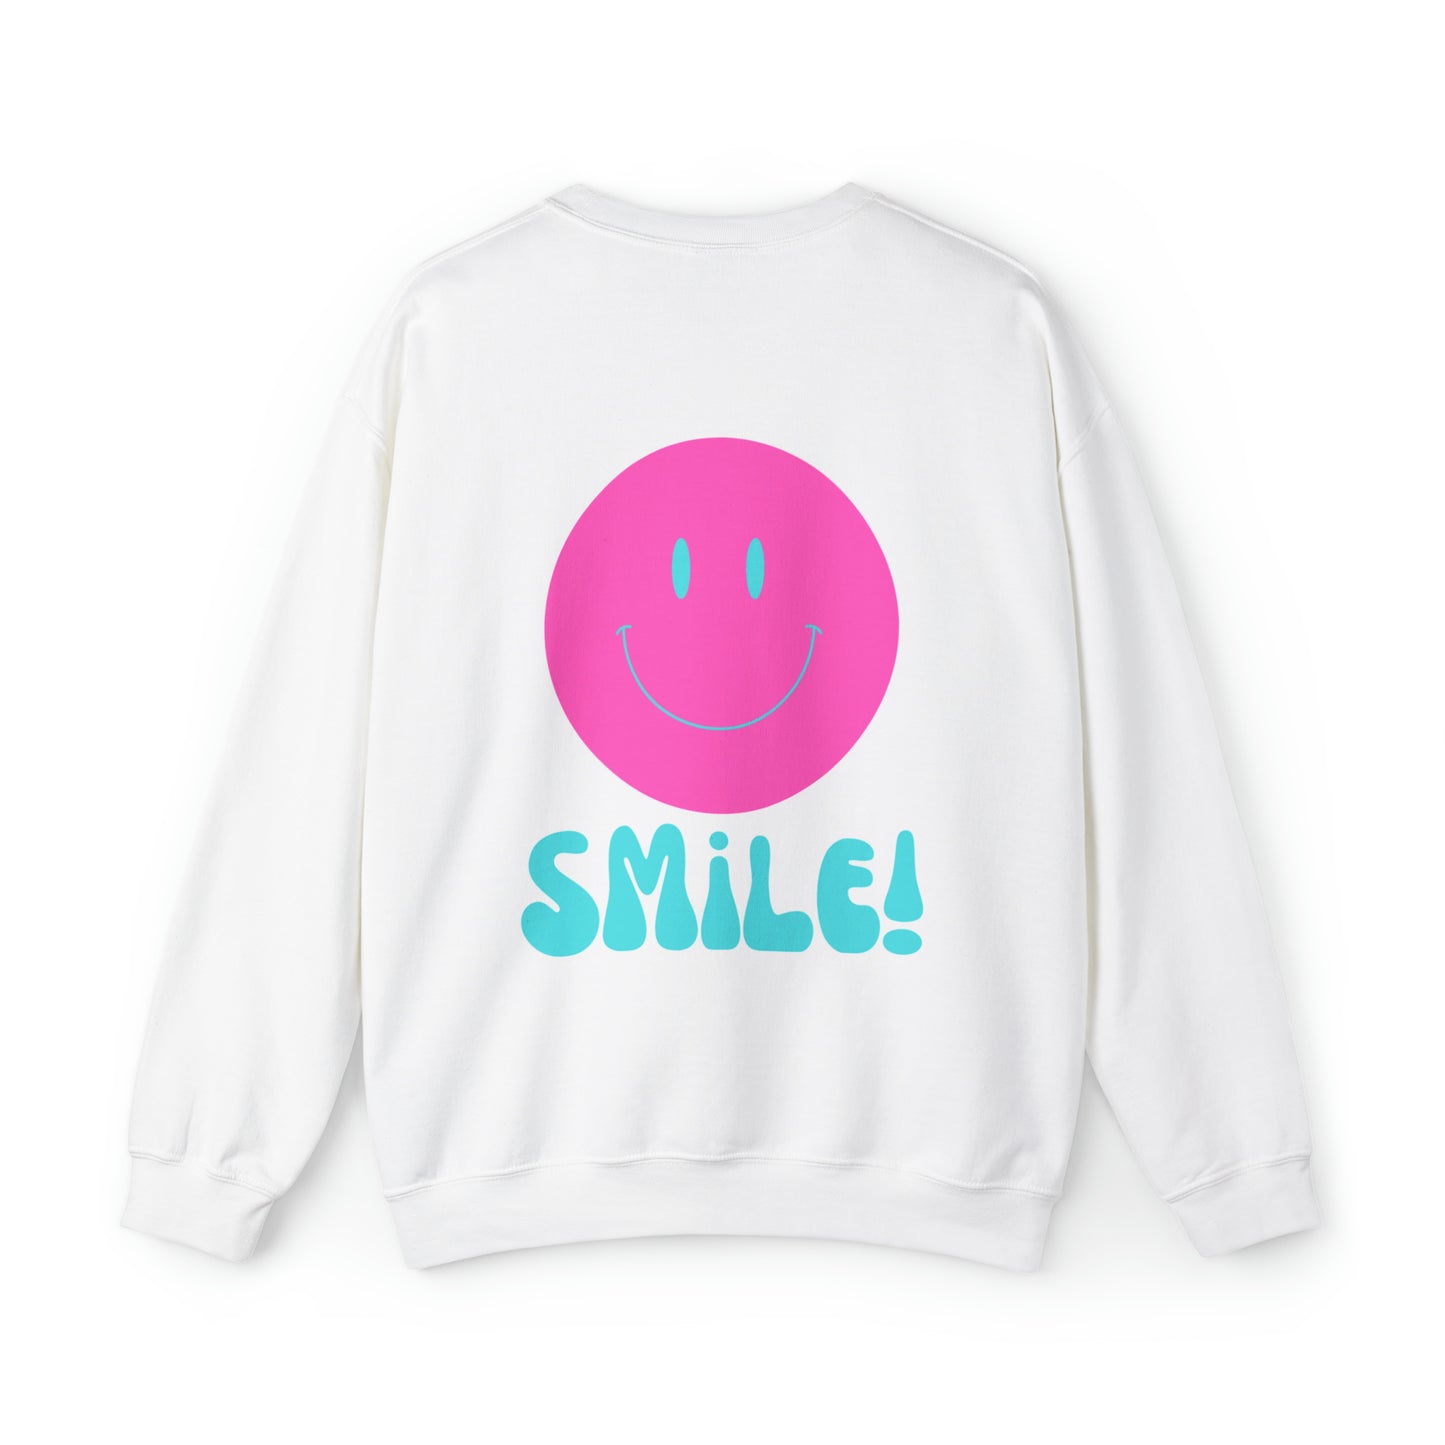 Pink and Turquoise Smile sweatshirt